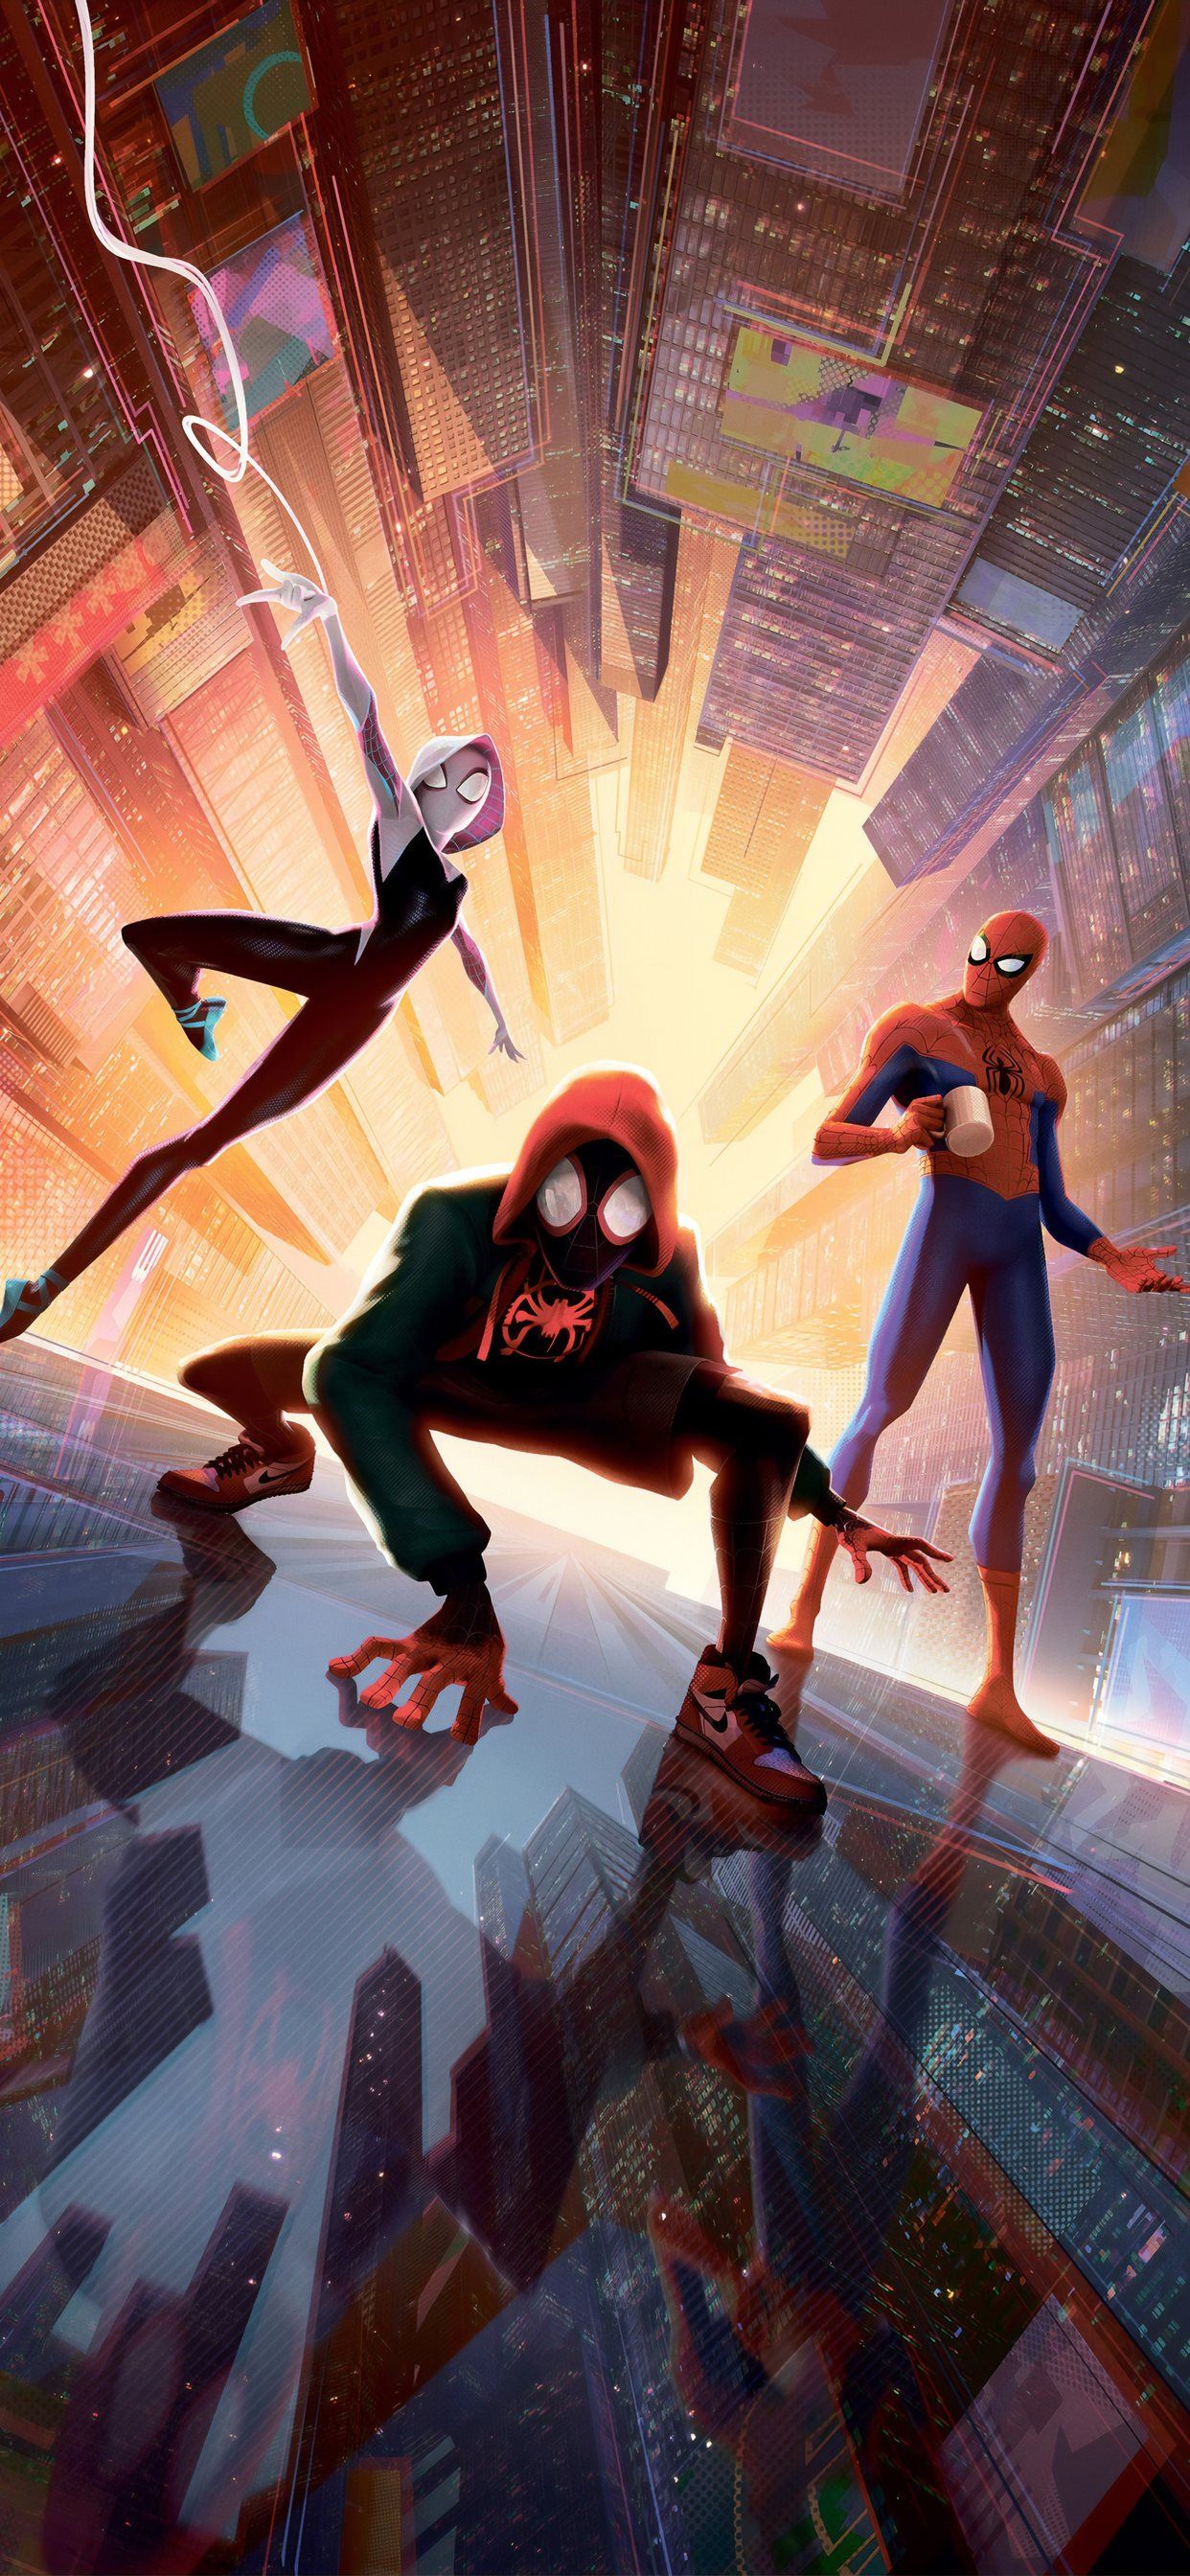 Spiderman vào Vũ trụ Nhện sẽ khiến bạn cảm thấy như đang đặt chân vào thế giới siêu anh hùng đầy màu sắc và đậm chất nghệ thuật. Hình nền Spiderman vào Vũ trụ Nhện sẽ khiến cho màn hình điện thoại của bạn trở nên sáng tạo và độc đáo hơn bao giờ hết.